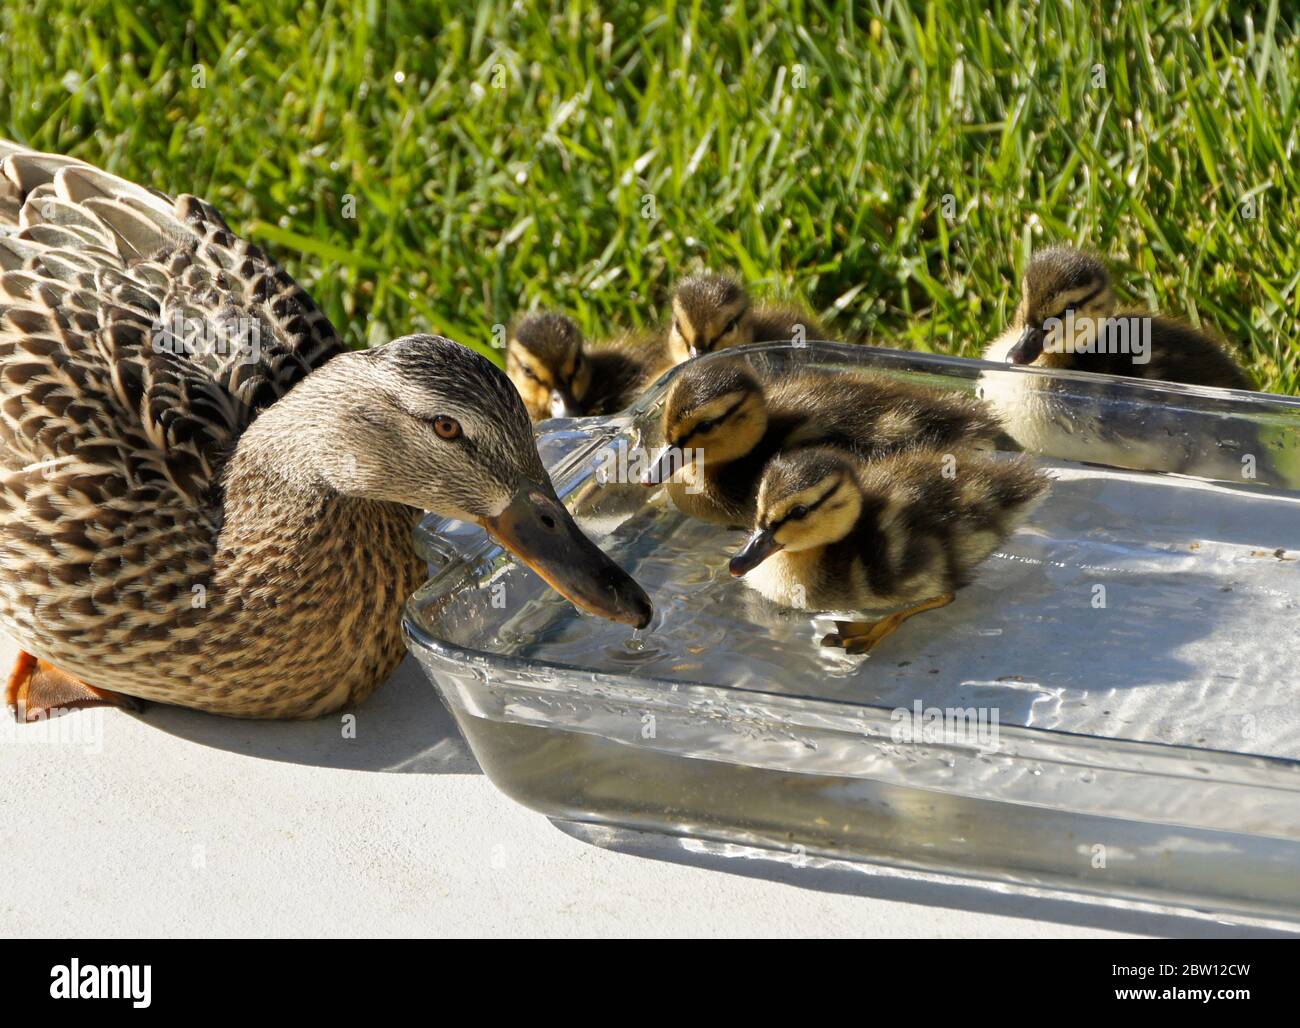 Hembra (gallina) pato de pato y patos de pato que beben y descansan en un tazón de agua fresca en el patio trasero de la casa del sur de California Foto de stock